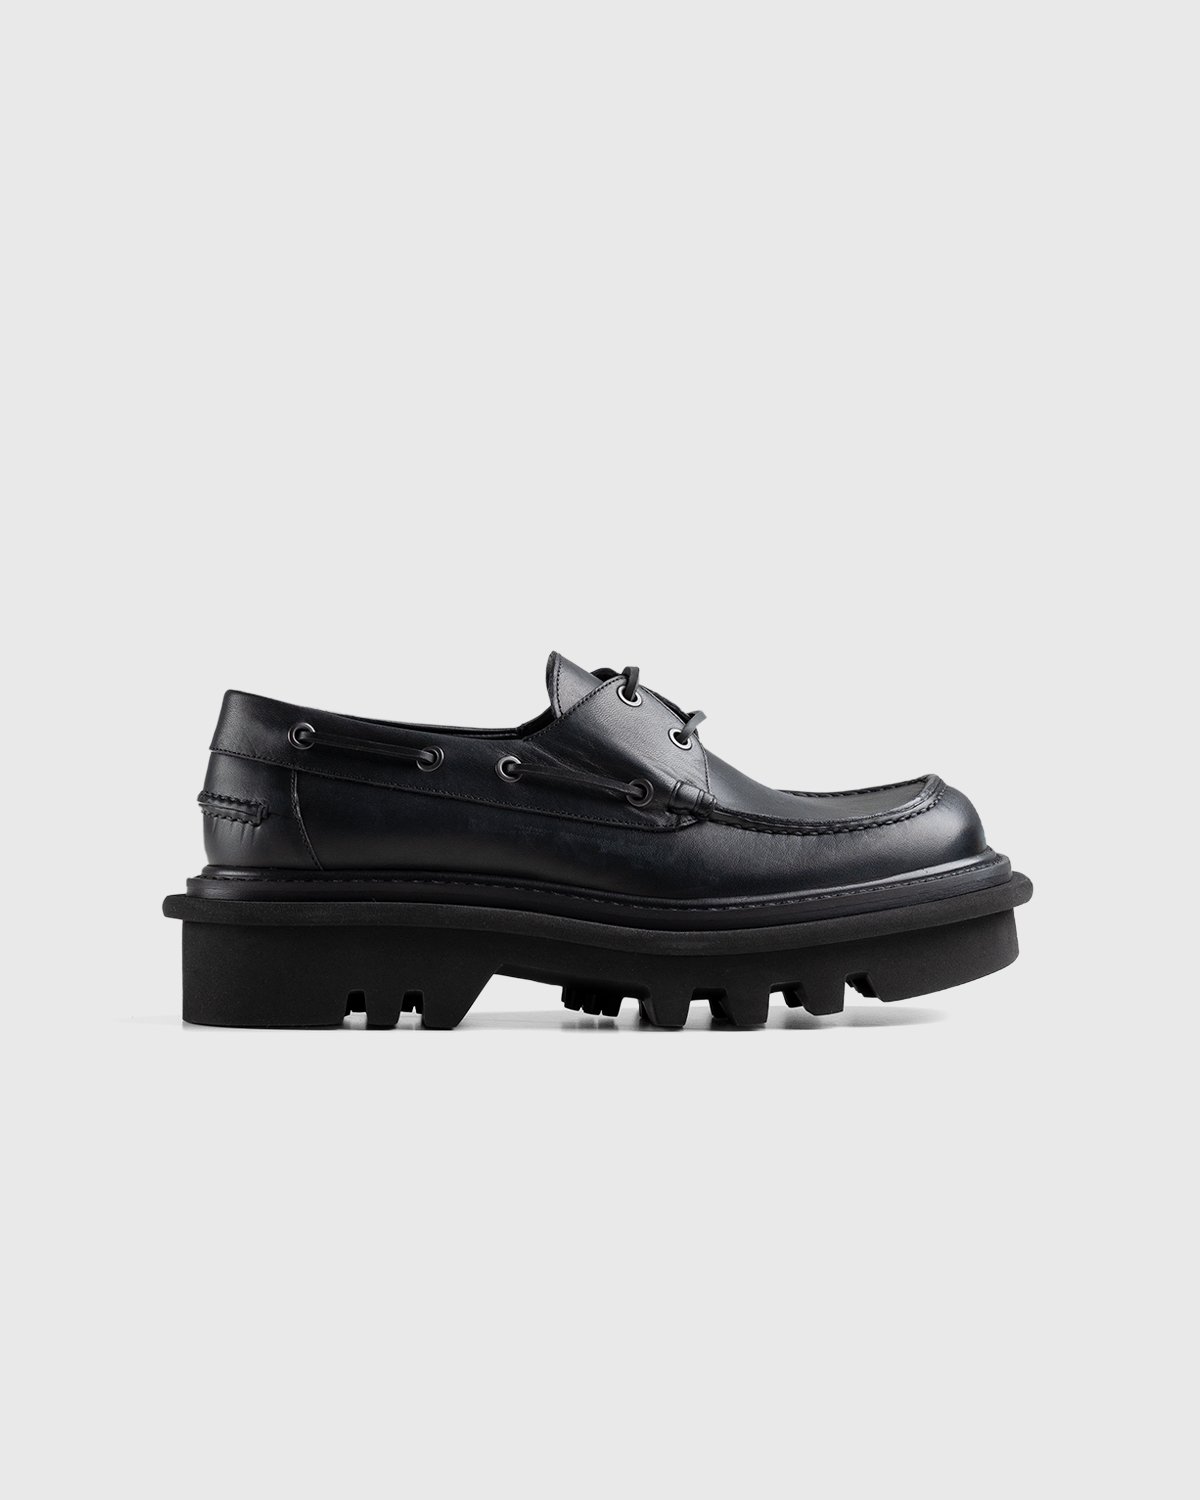 Dries van Noten - Leather Boat Shoe Black - Footwear - Black - Image 1